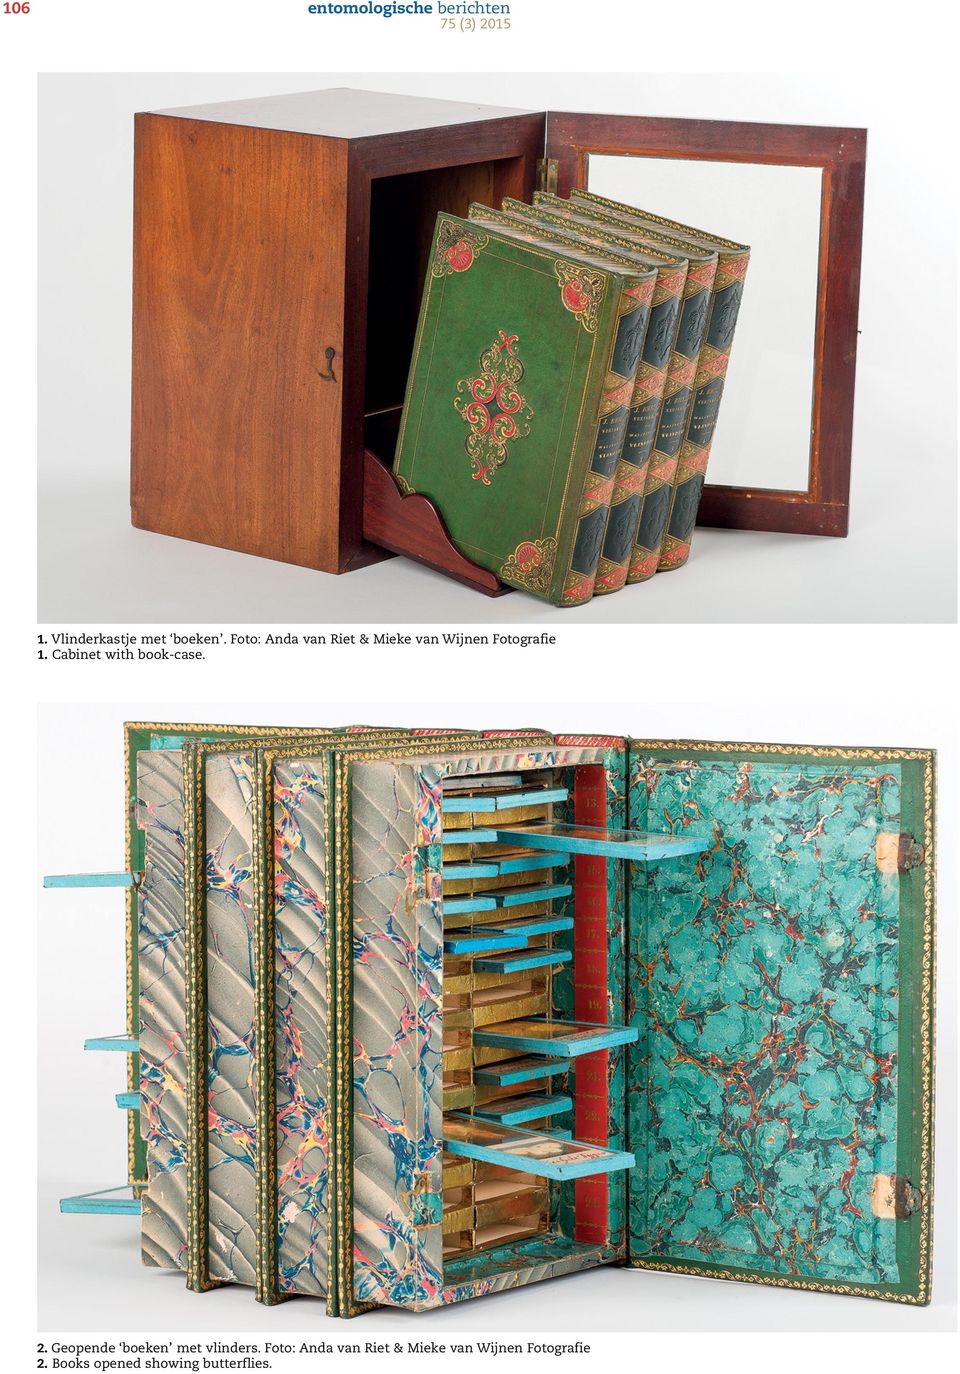 Cabinet with book-case. 2. Geopende boeken met vlinders.